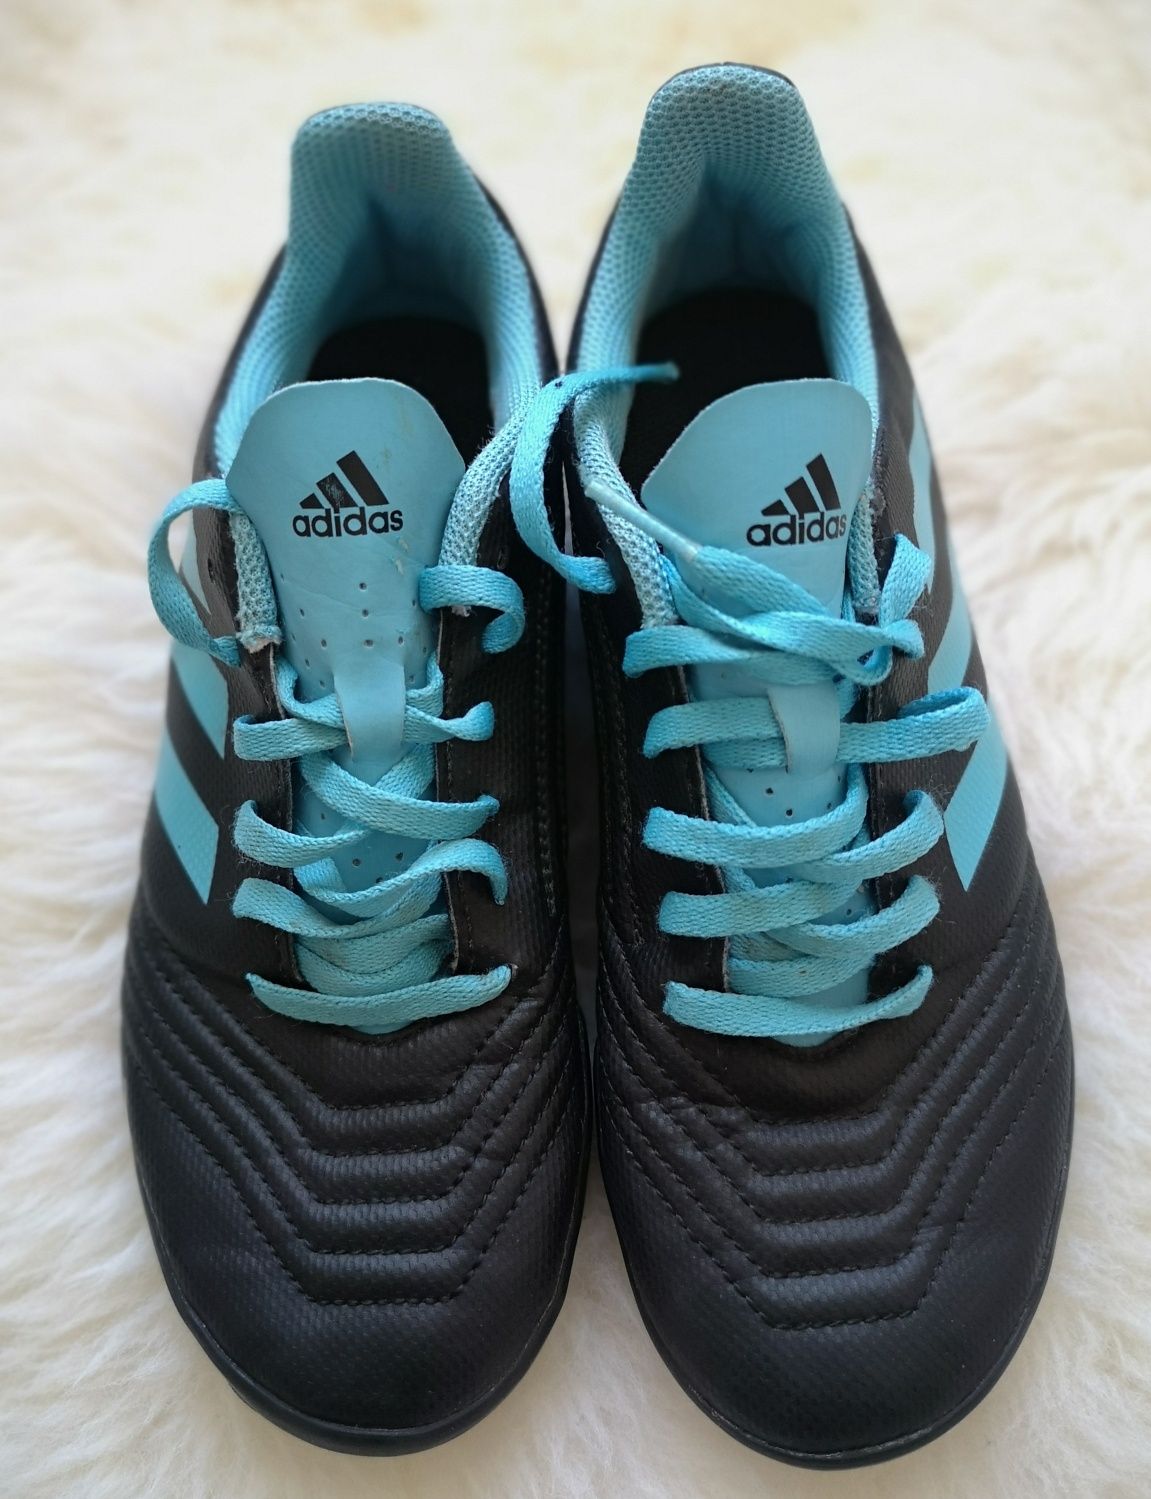 Chłopięce buty piłkarskie | ADIDAS Predator | r. 36